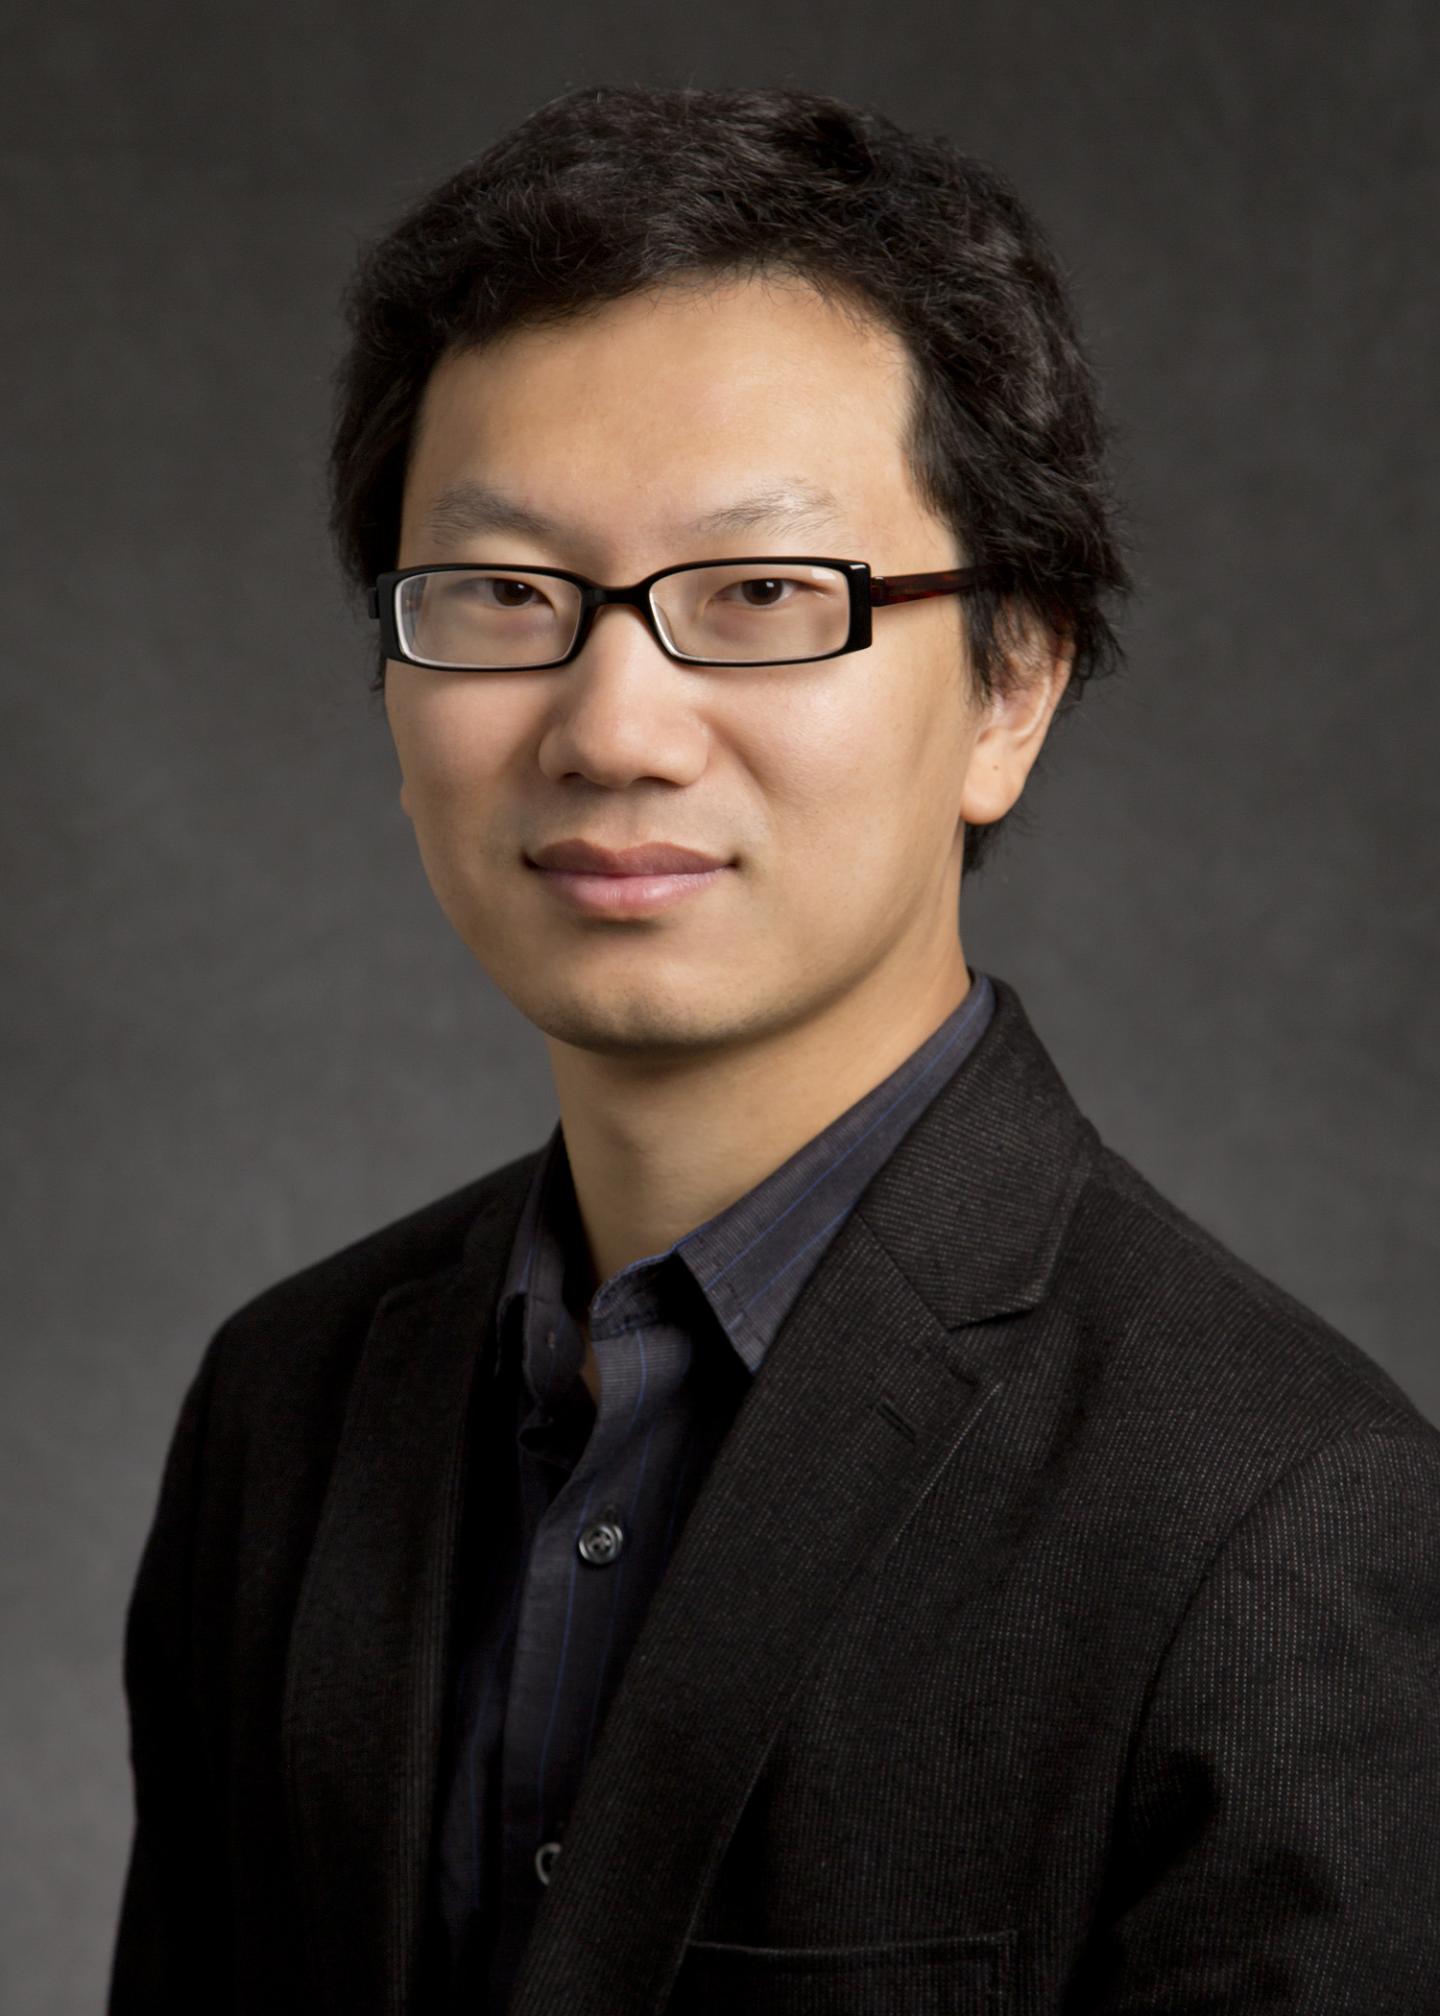 Zhang Yang, University of Illinois College of Engineering